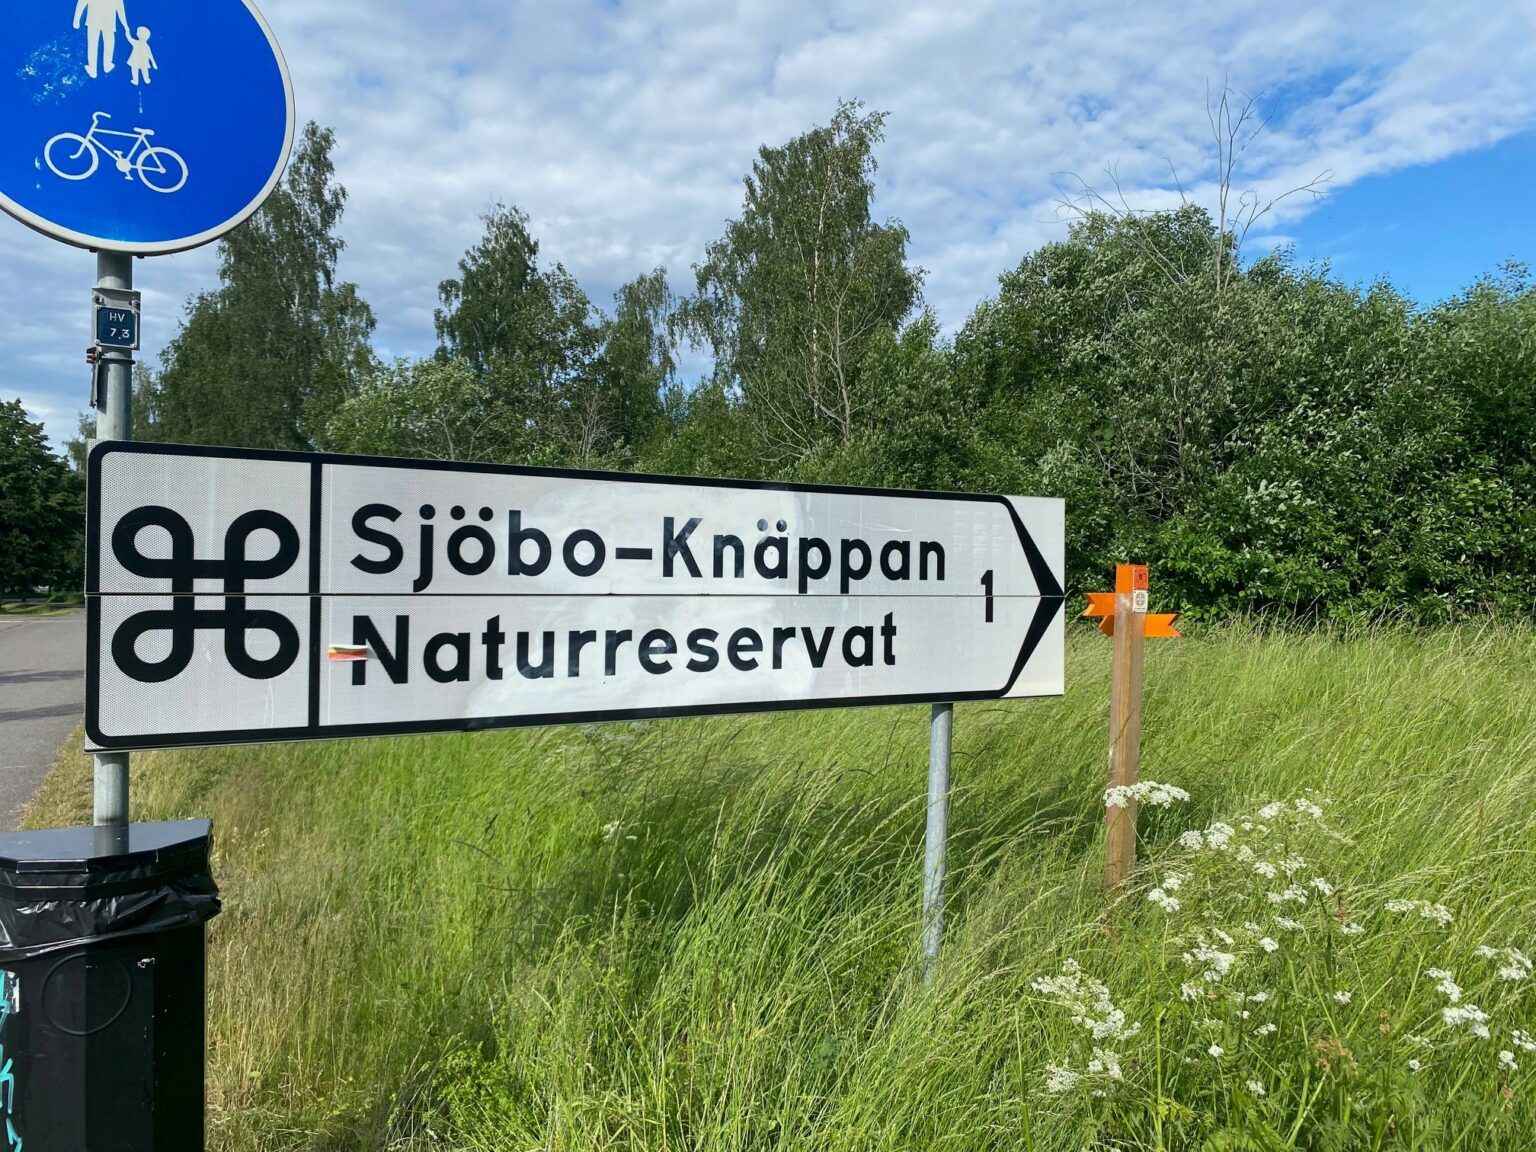 En vit informationsskylt i bild: "Sjöbo-Knäppan naturreservat".